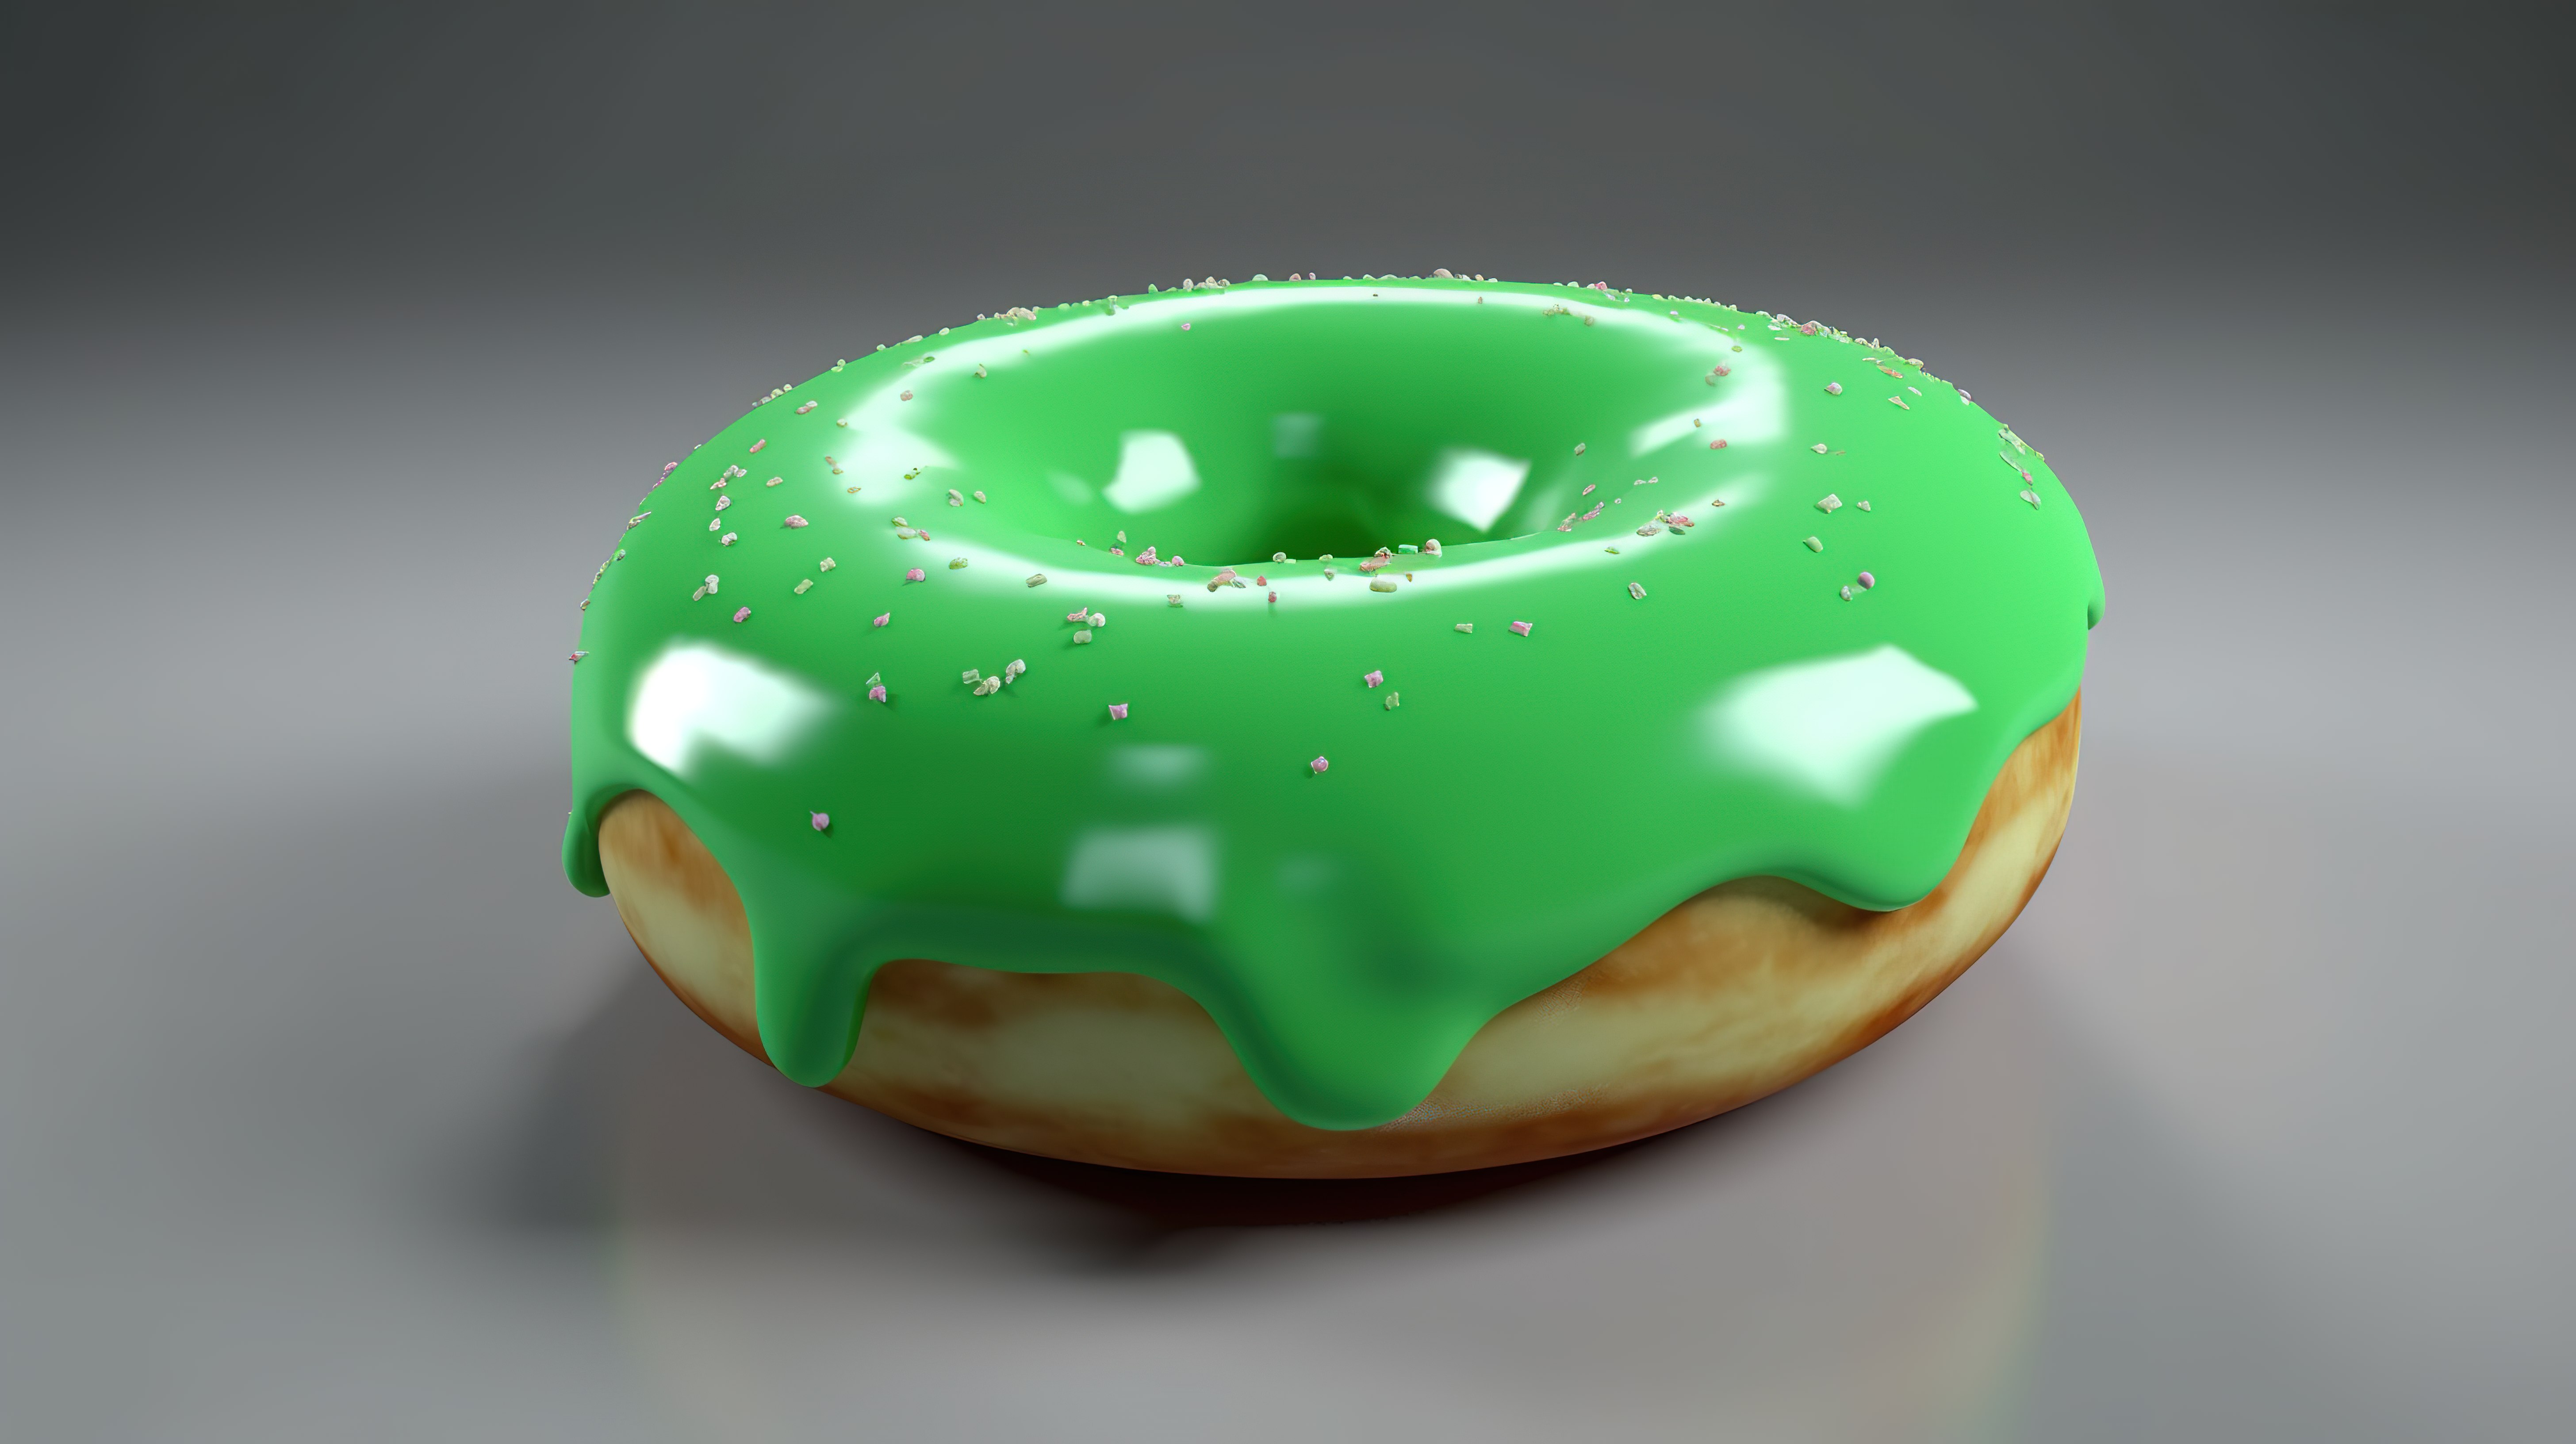 以 3d 呈现的绿色甜甜圈卡通对象图片